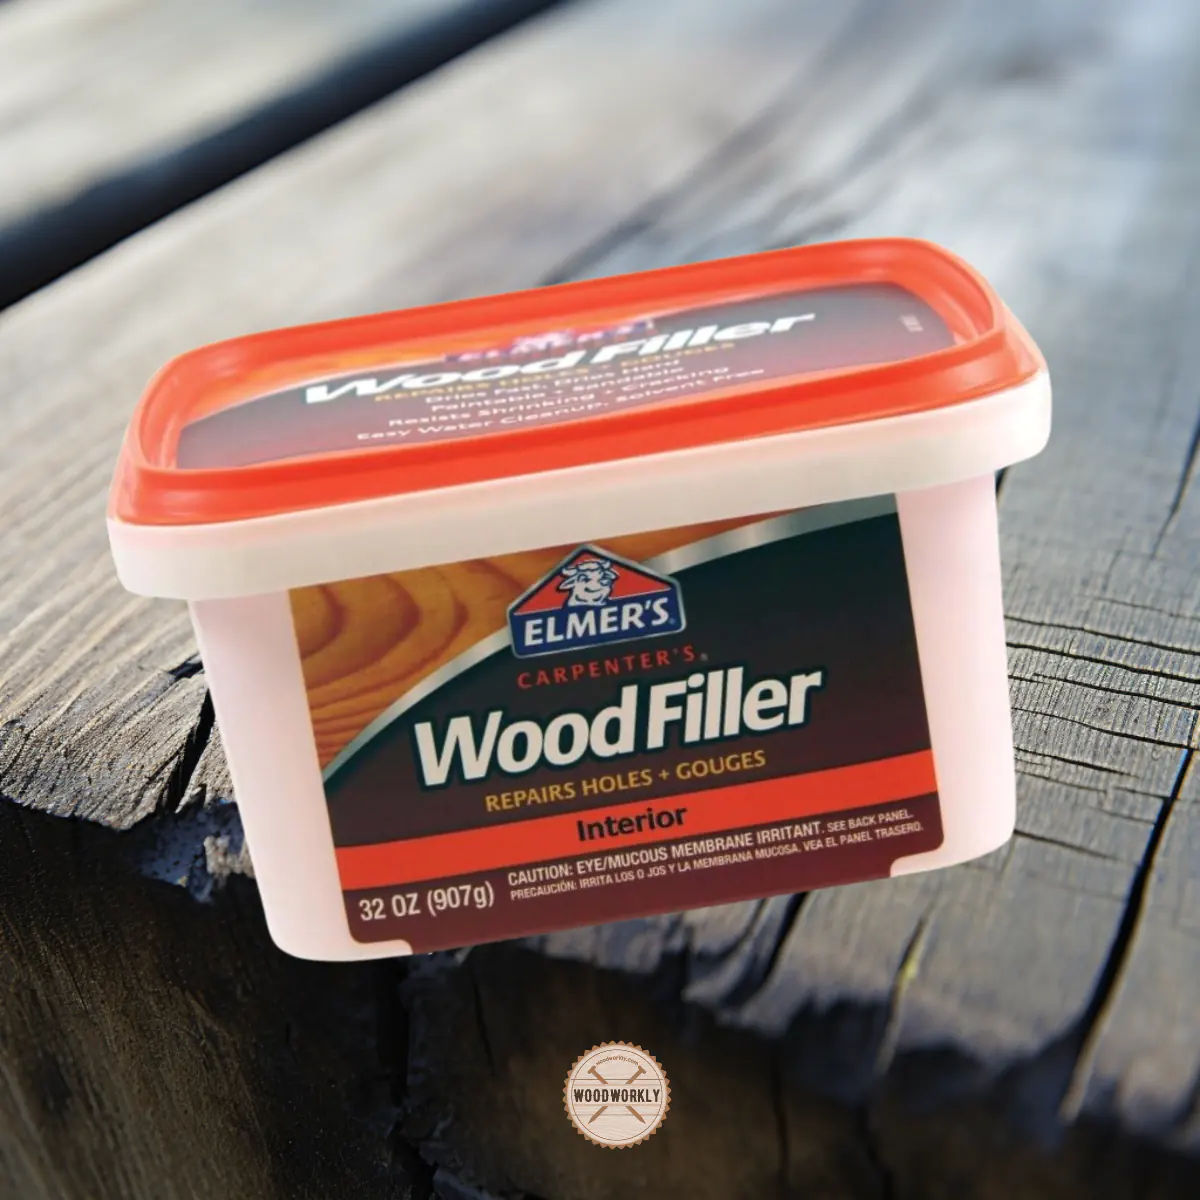 Elmer’s Carpenter’s Wood Filler